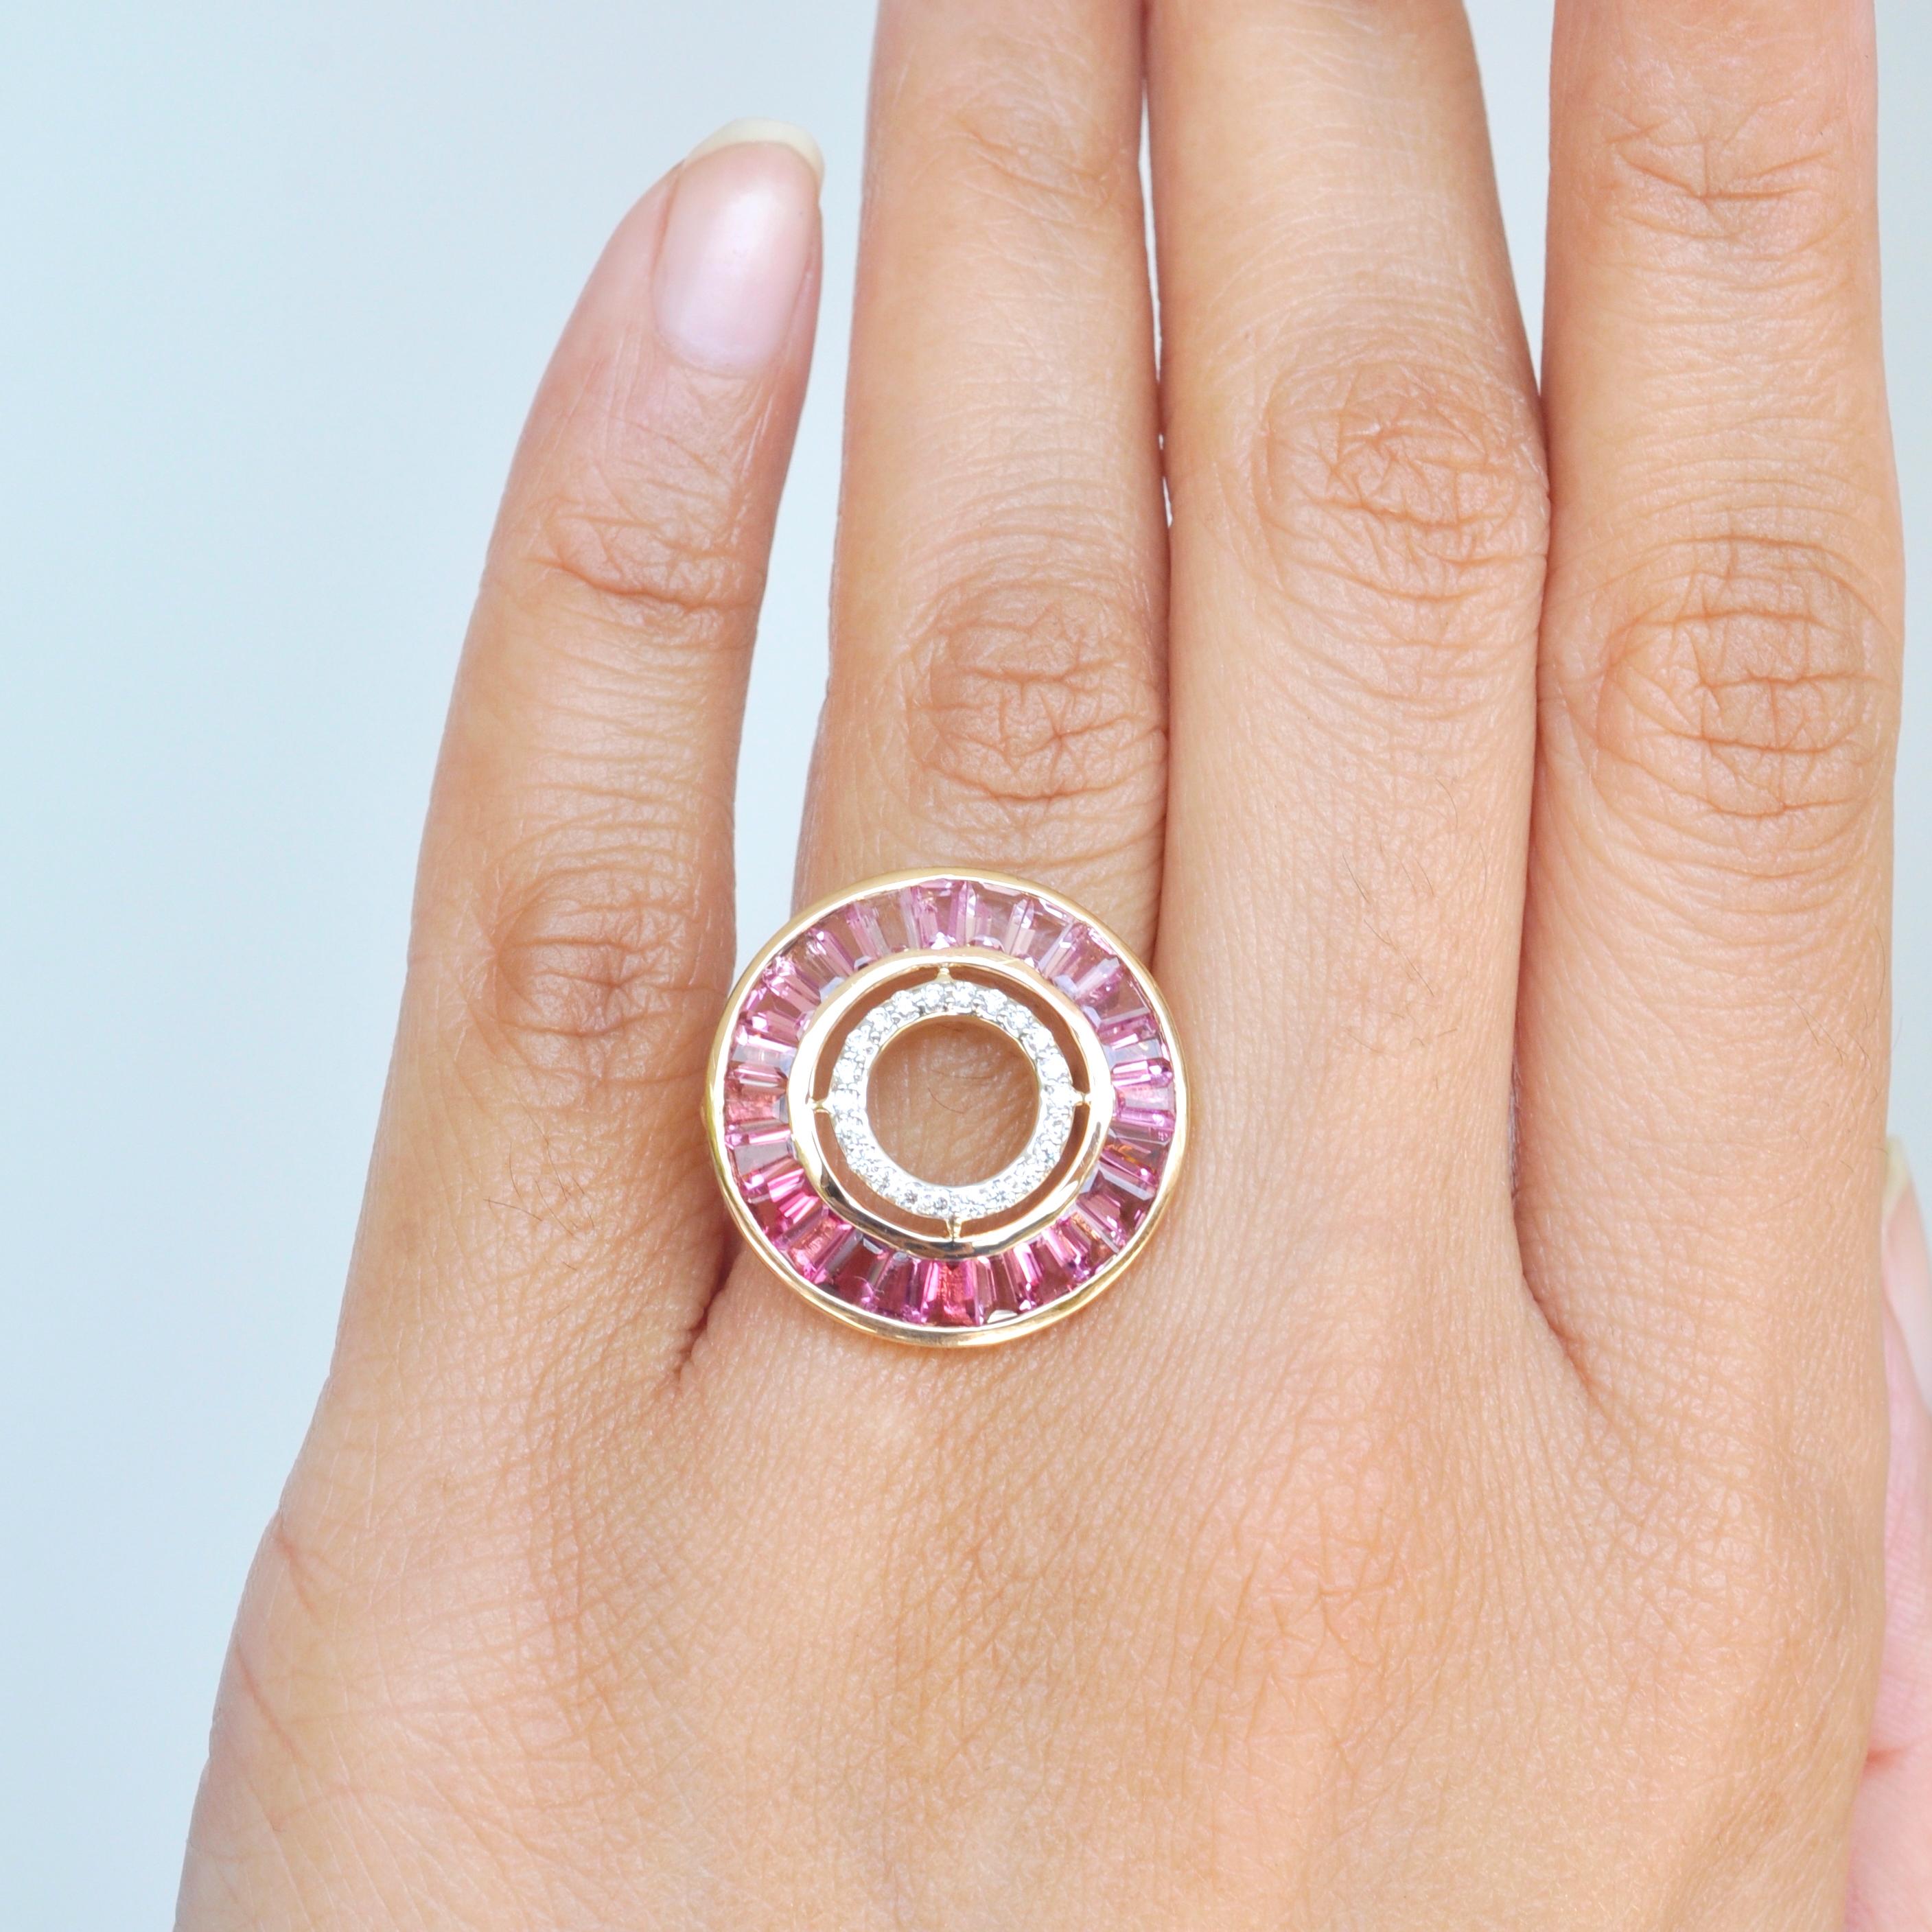 18 Karat Gold benutzerdefinierte geschnitten rosa Turmalin Baguette Diamant Art Deco kreisförmigen Ring.

Art Déco-Stil, Farbe und Kultur inspirieren diesen wunderschönen runden Ring aus 18-karätigem Gold mit Baguetteschliff und Diamanten aus rosa